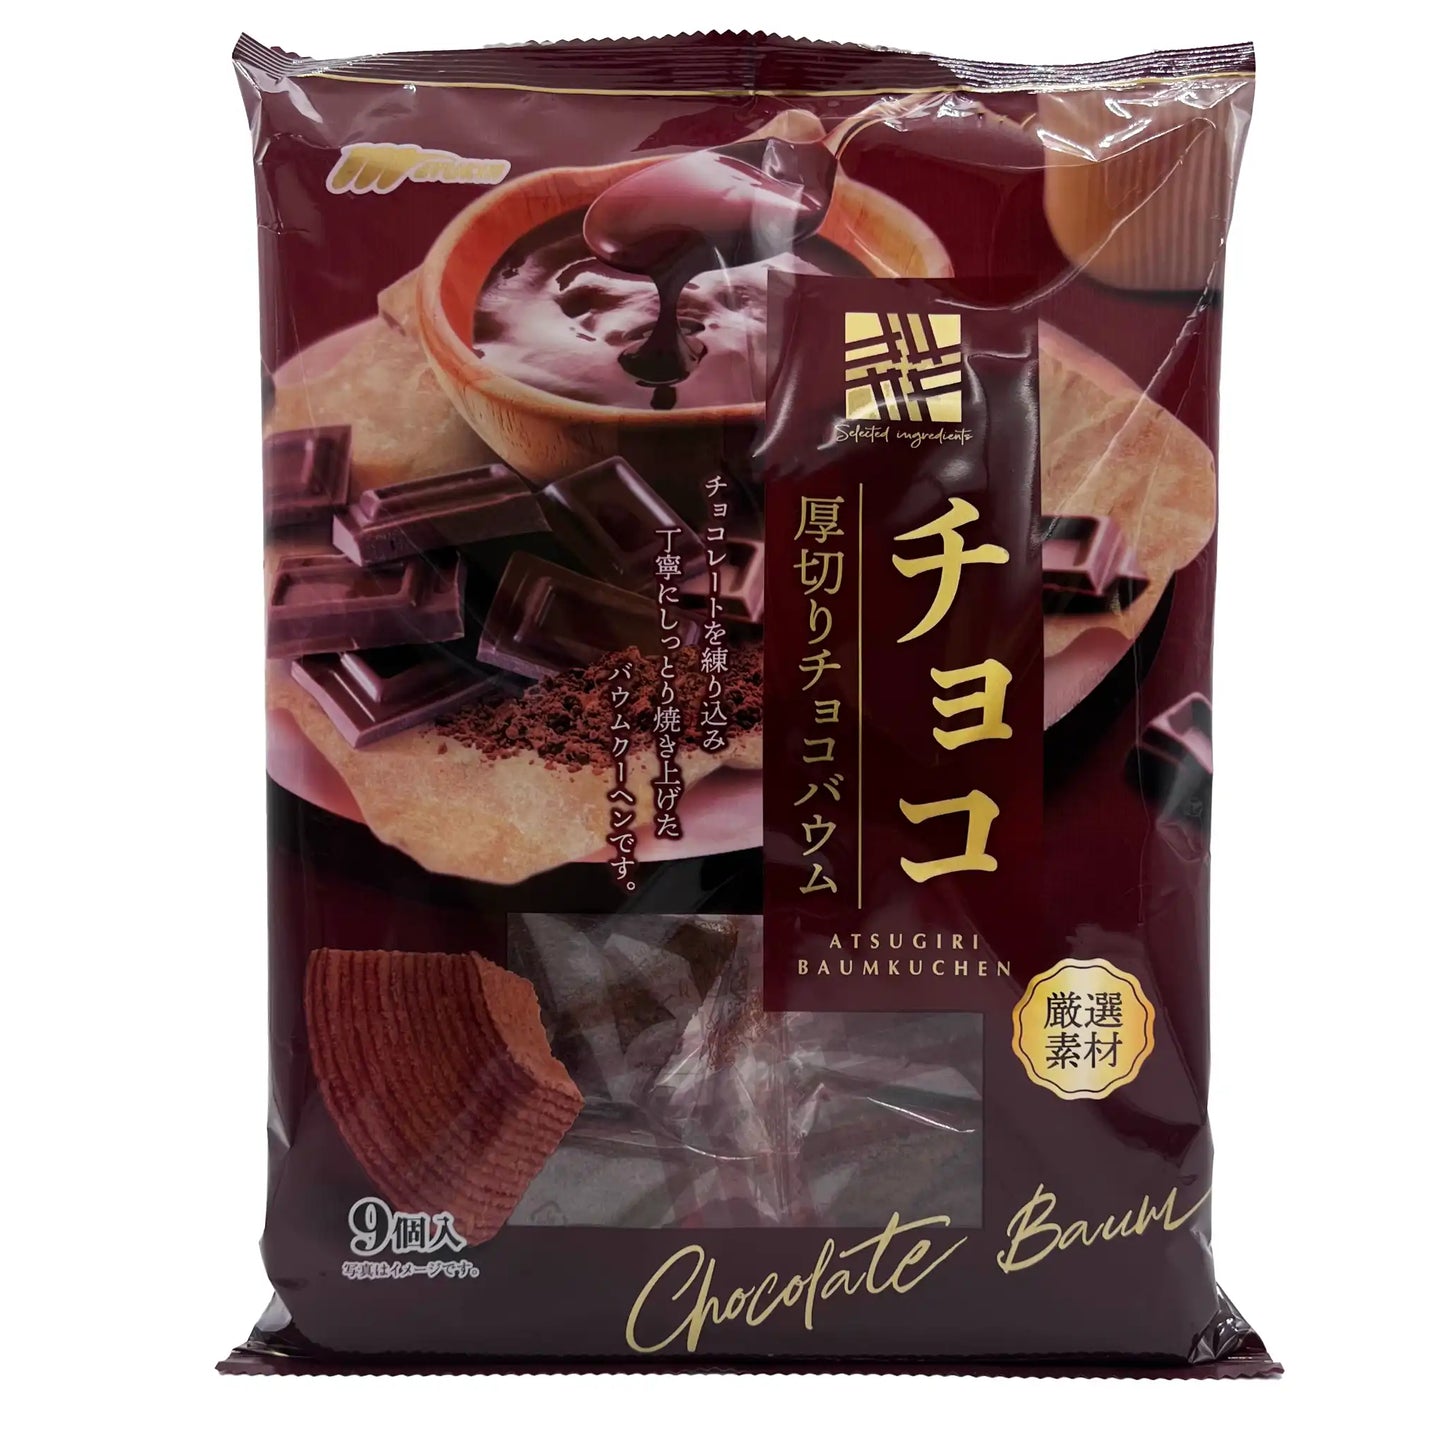 marukin Atsugiri Chocolate Baumkuchen 9 Pieces 193 g